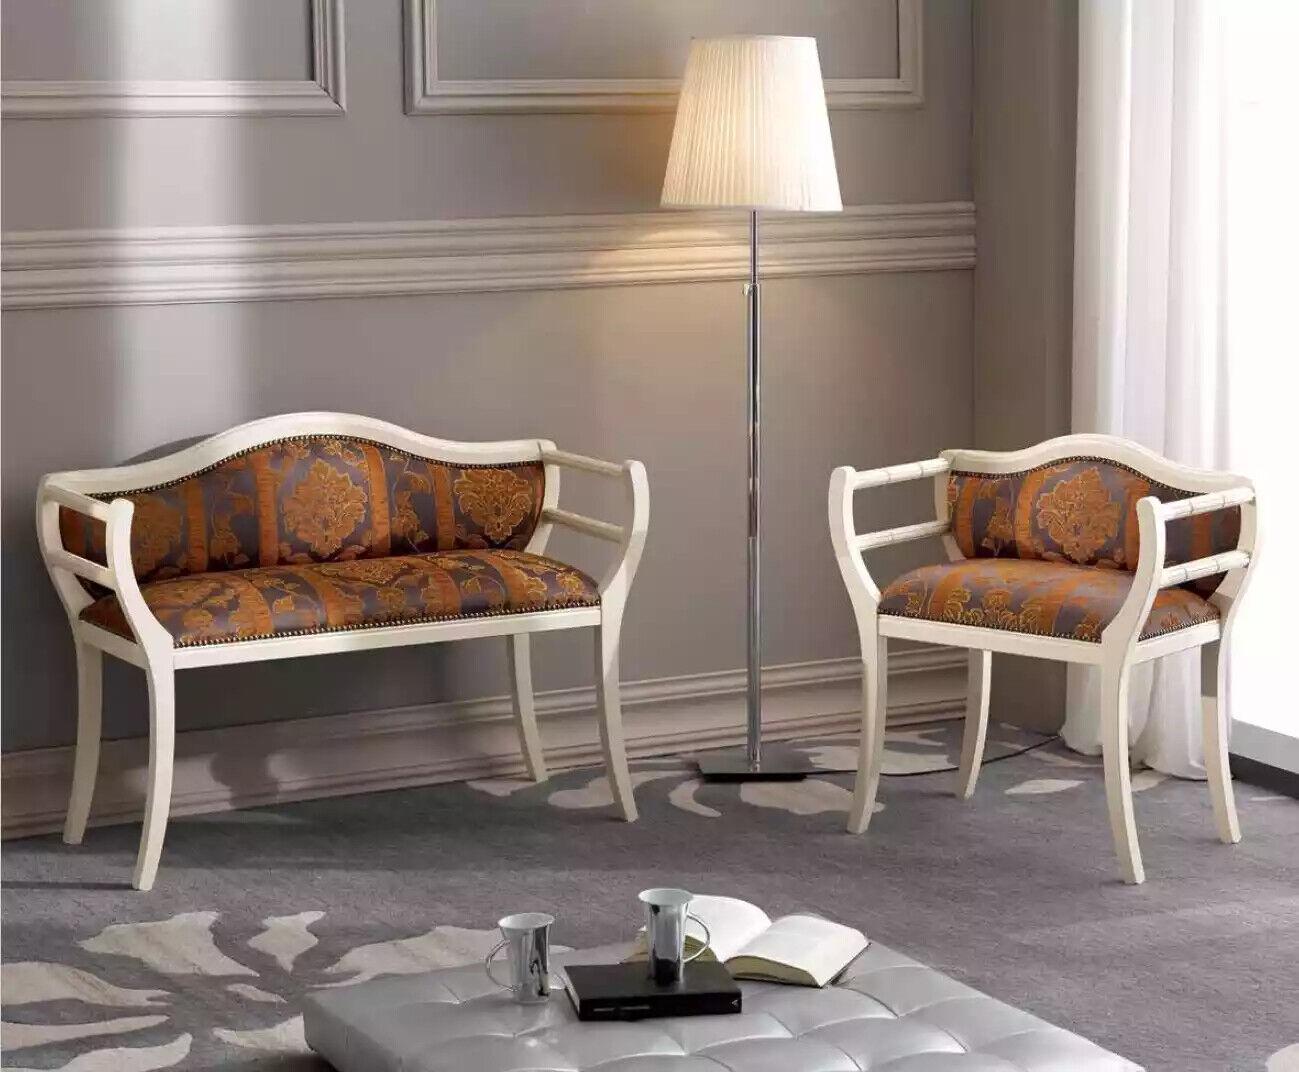 Klassische Sitzgarnitur Bank Stühle Polstermöbel Wohnzimmermöbel Design